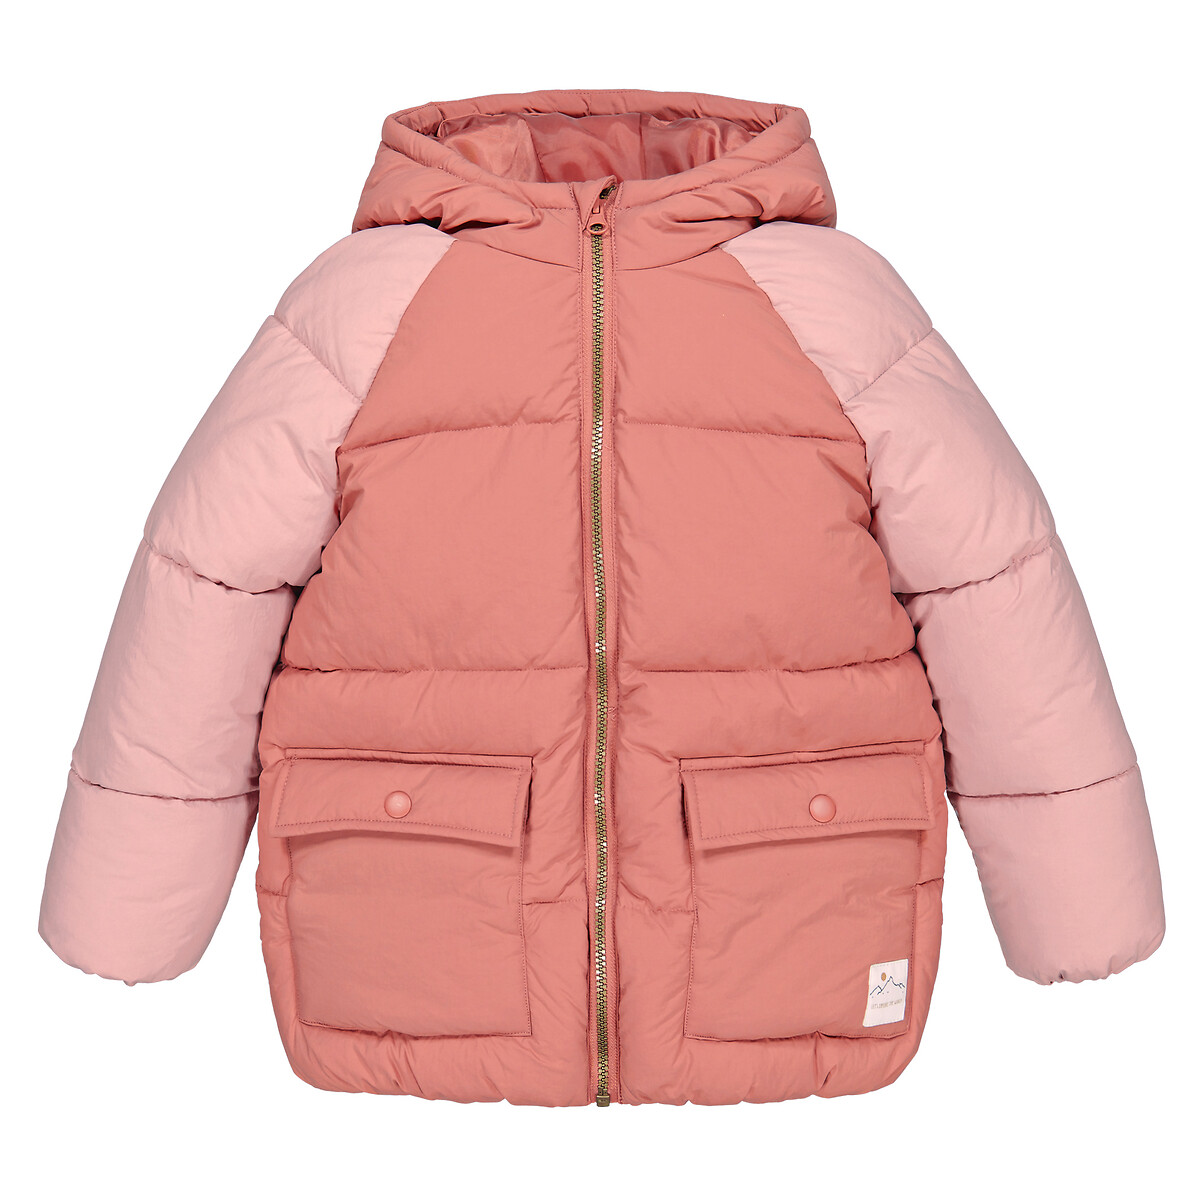 Куртка Стеганая с капюшоном 3 года - 94 см розовый LaRedoute, размер 3 года - 94 см - фото 3